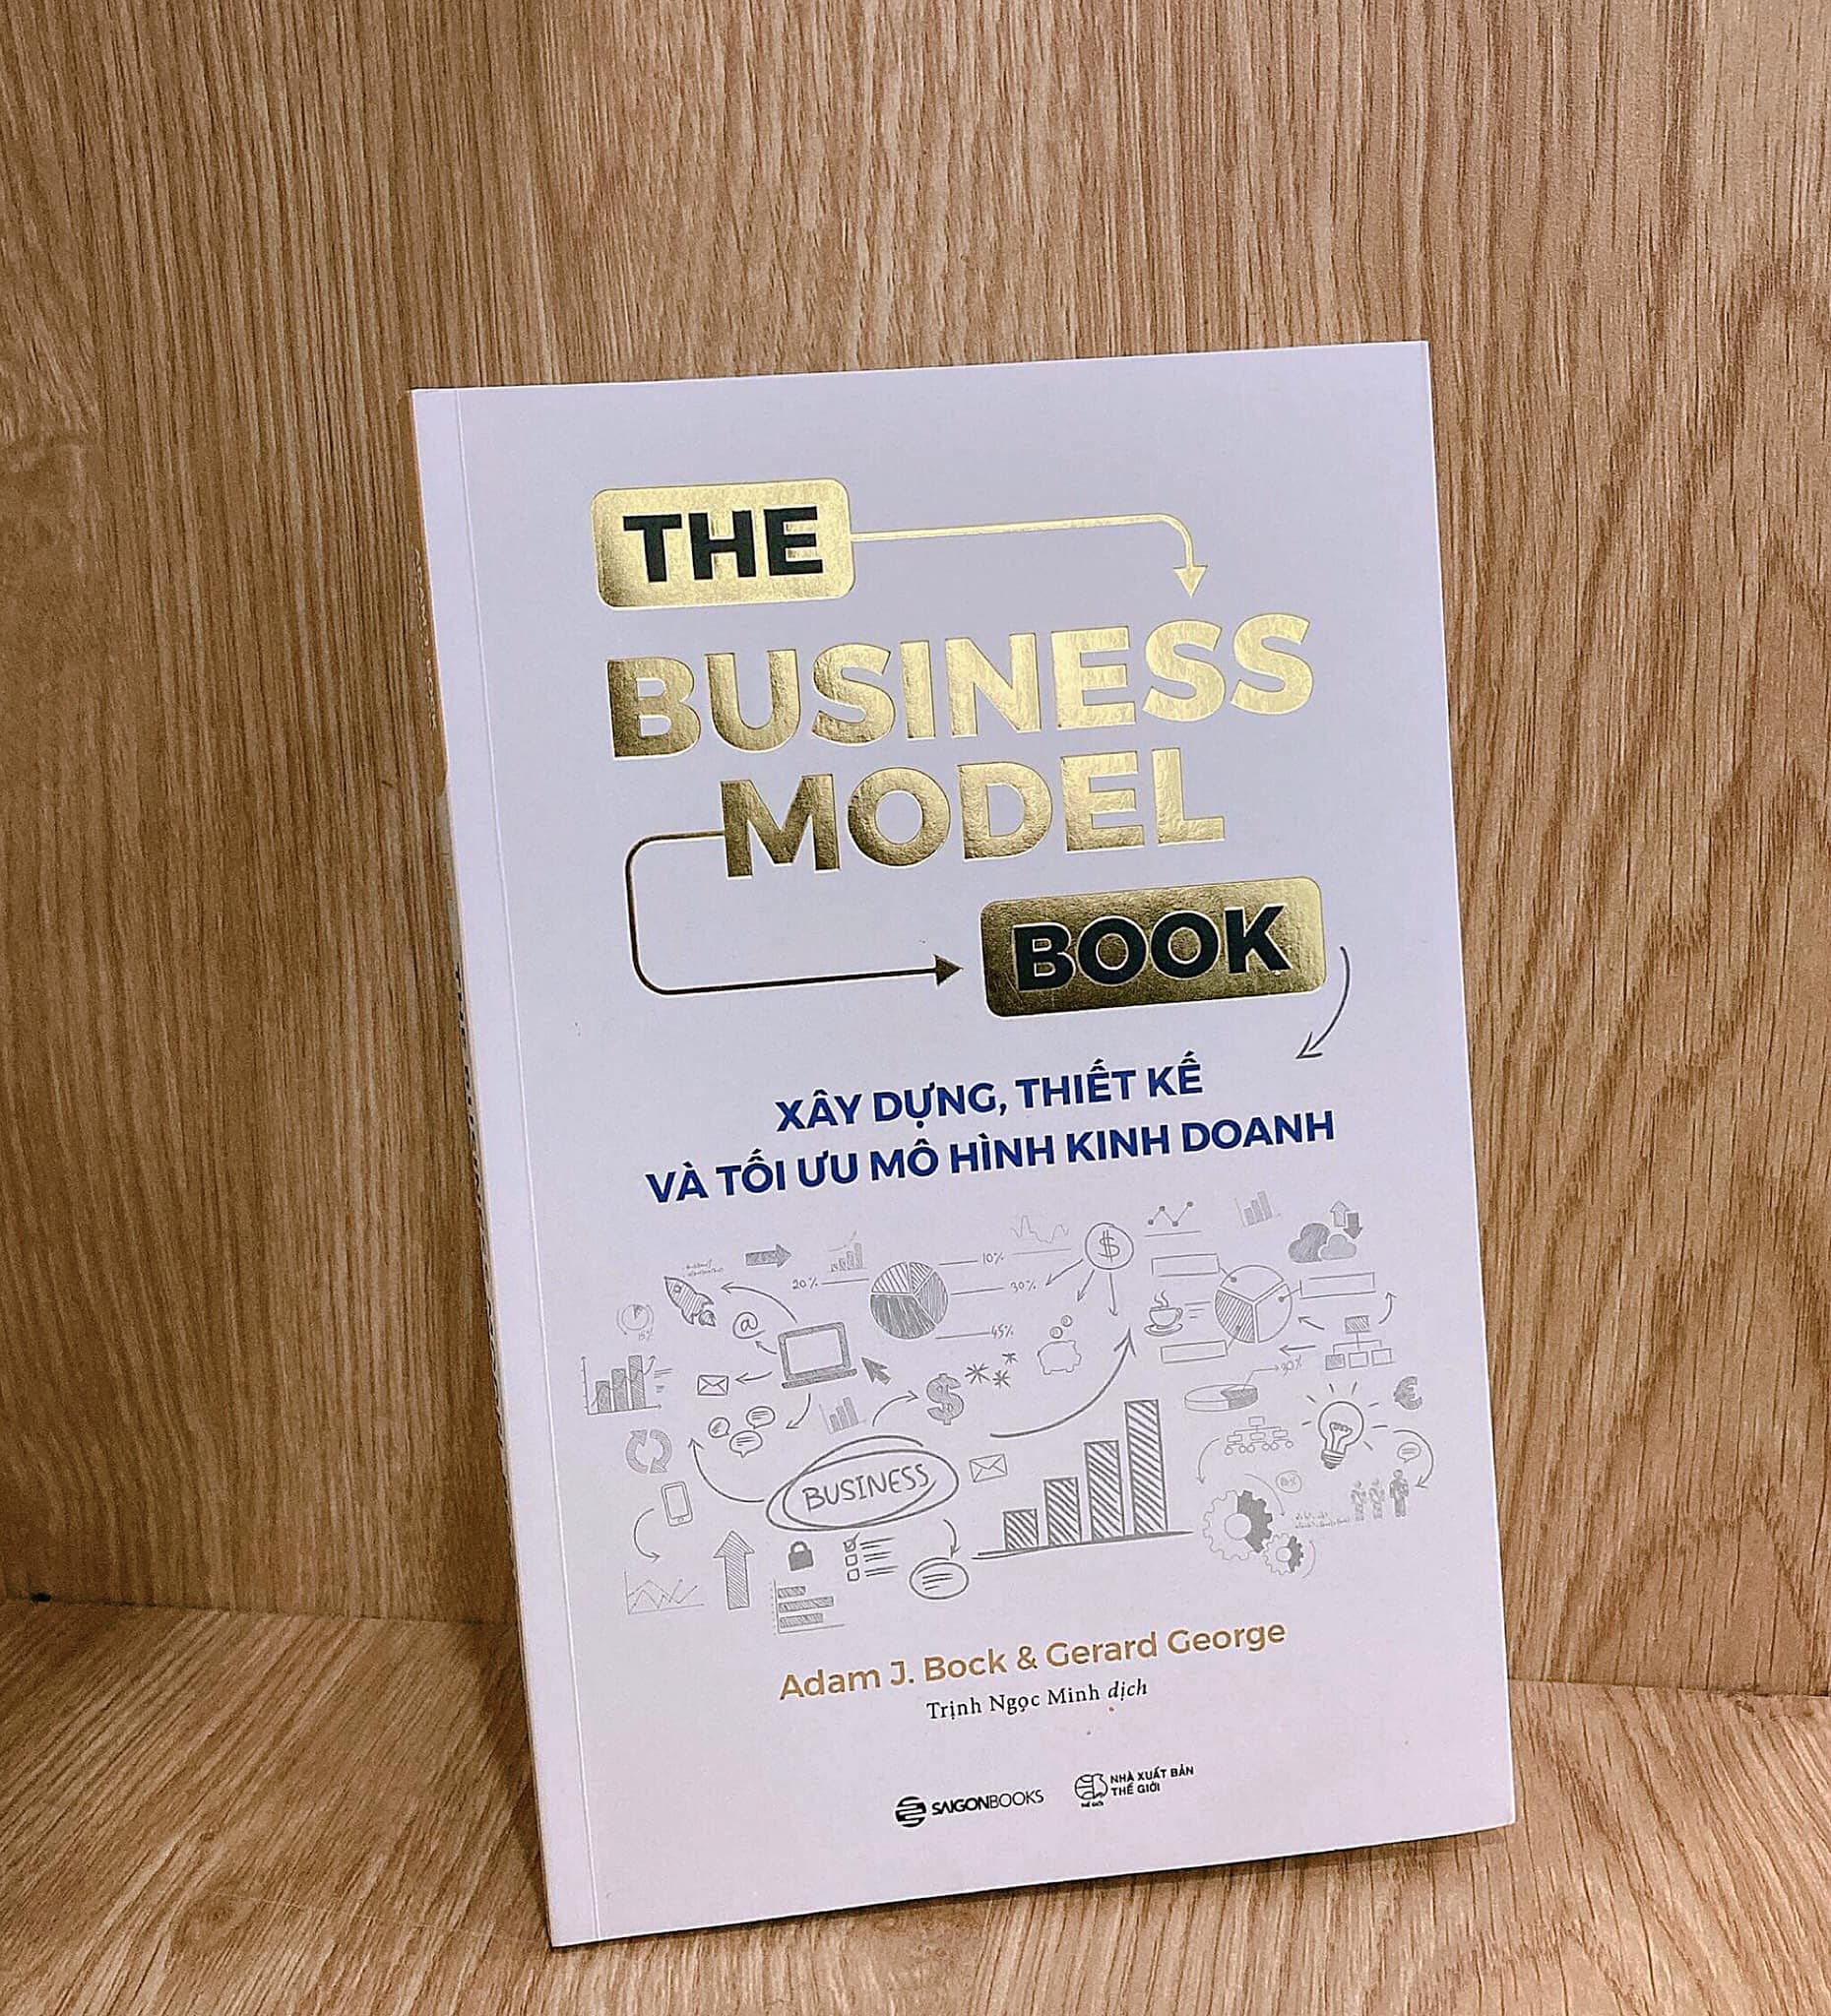 The Business Model Book: Xây dựng, Thiết kế và Tối ưu Mô hình kinh doanh - Tác giả Adam J. Bock , Gerard George